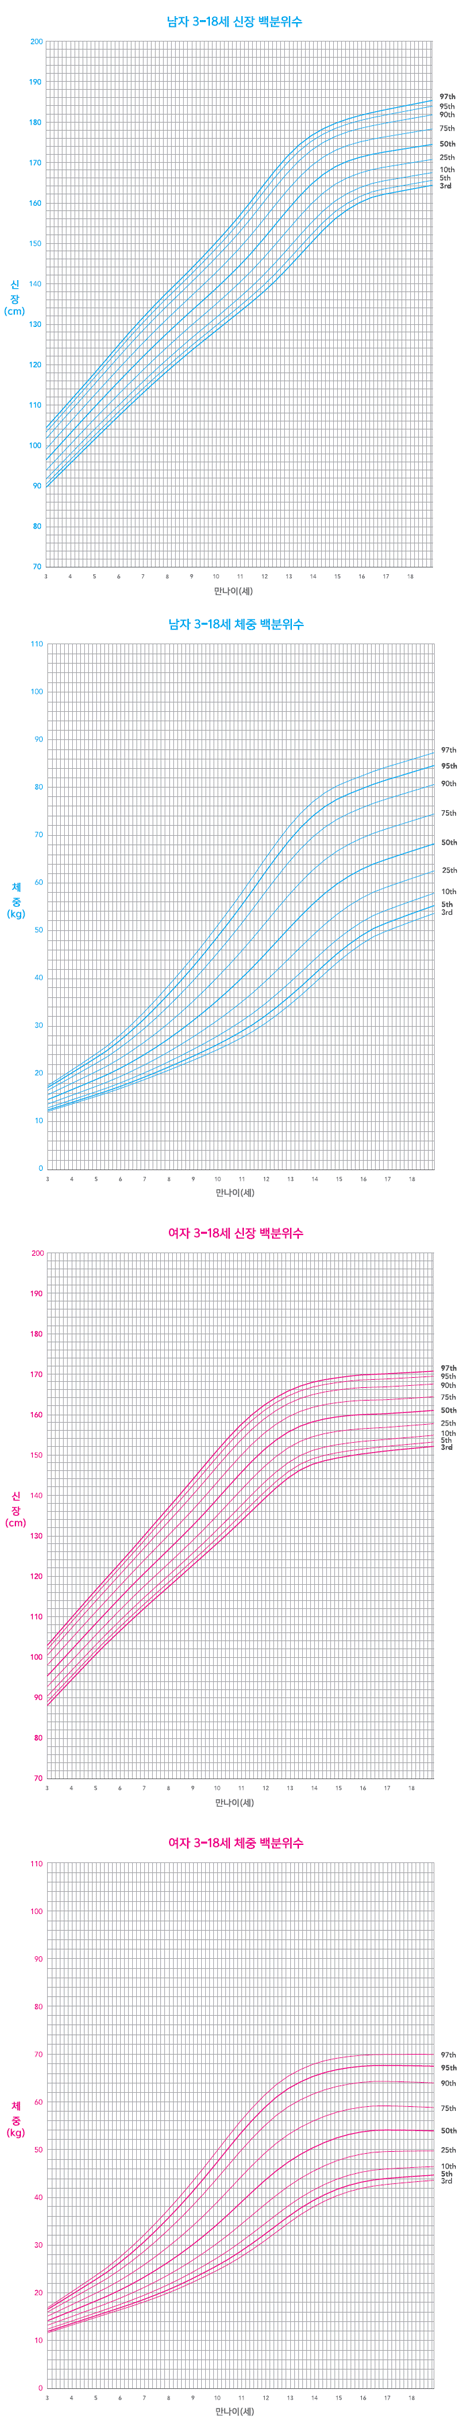 한국 소아의 발육 곡선 (3-18세) - 남자 3-18세 신장 백분위수, 남자 3-18세 체중 백분위수, 여자 3-18세 신장 백분위수, 여자 3-18세 체중 백분위수